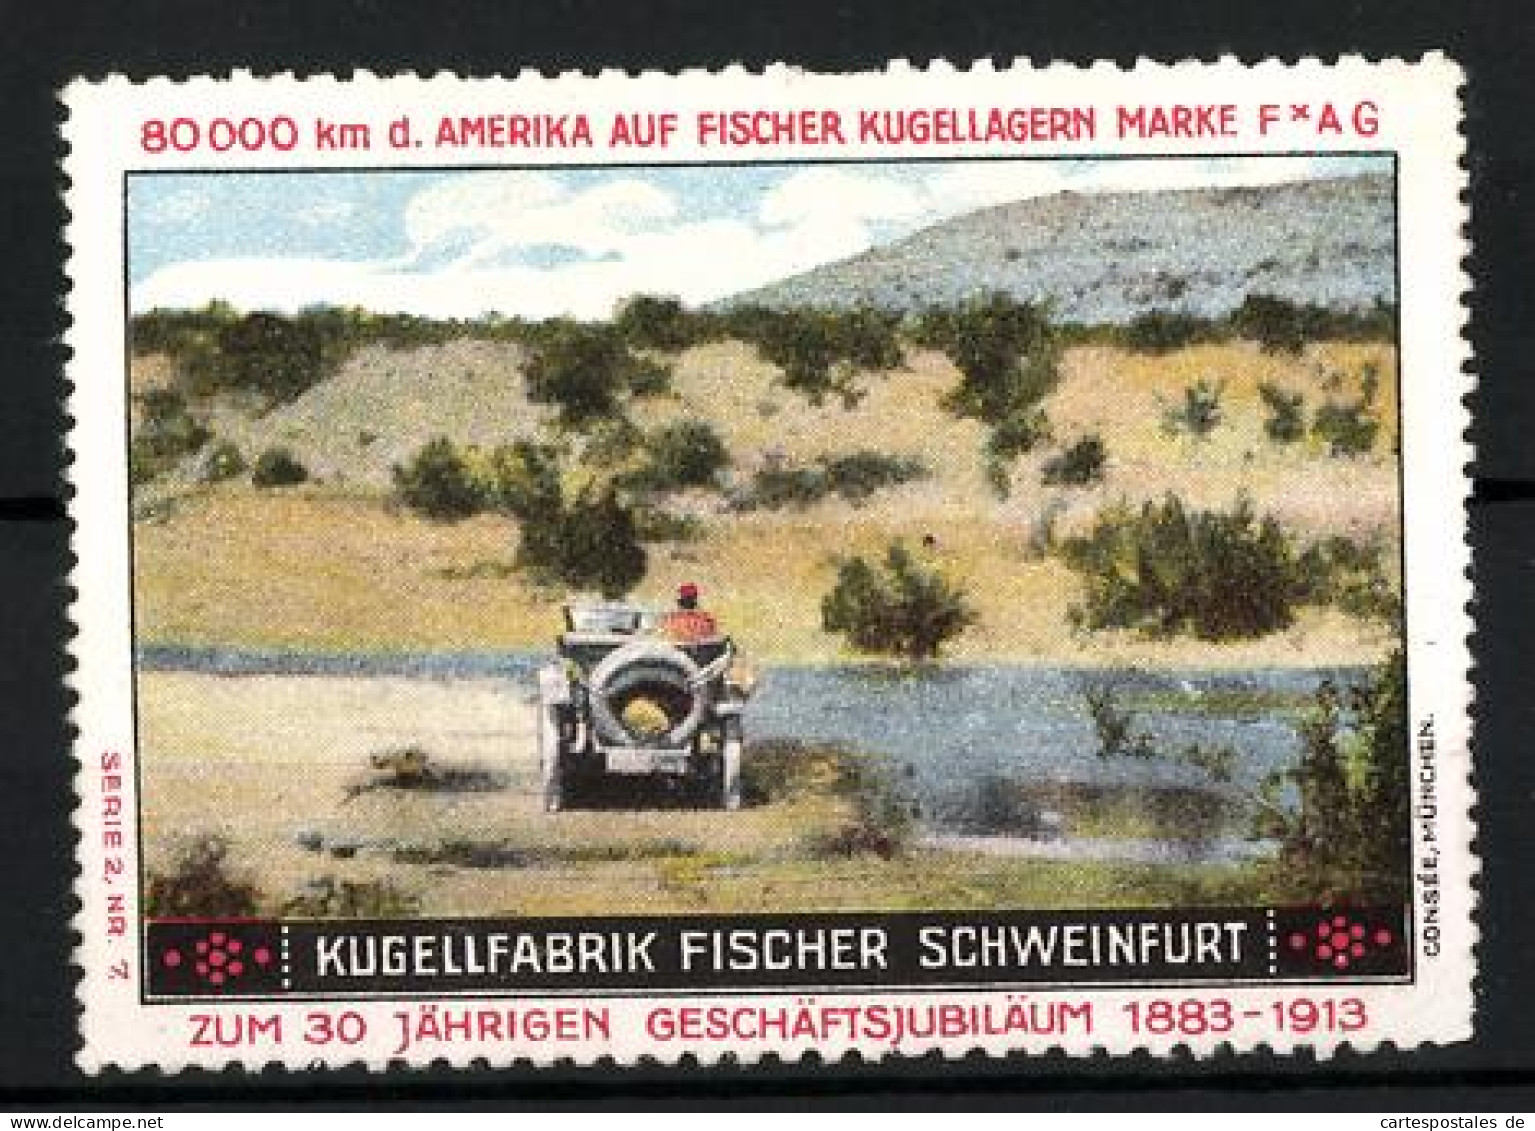 Reklamemarke Fischer Kugellager FAG, Kugellfabrik Fischer Schweinfurt, 30 Jähr. Geschäftsjubiläum 1883-1913, Auto  - Cinderellas